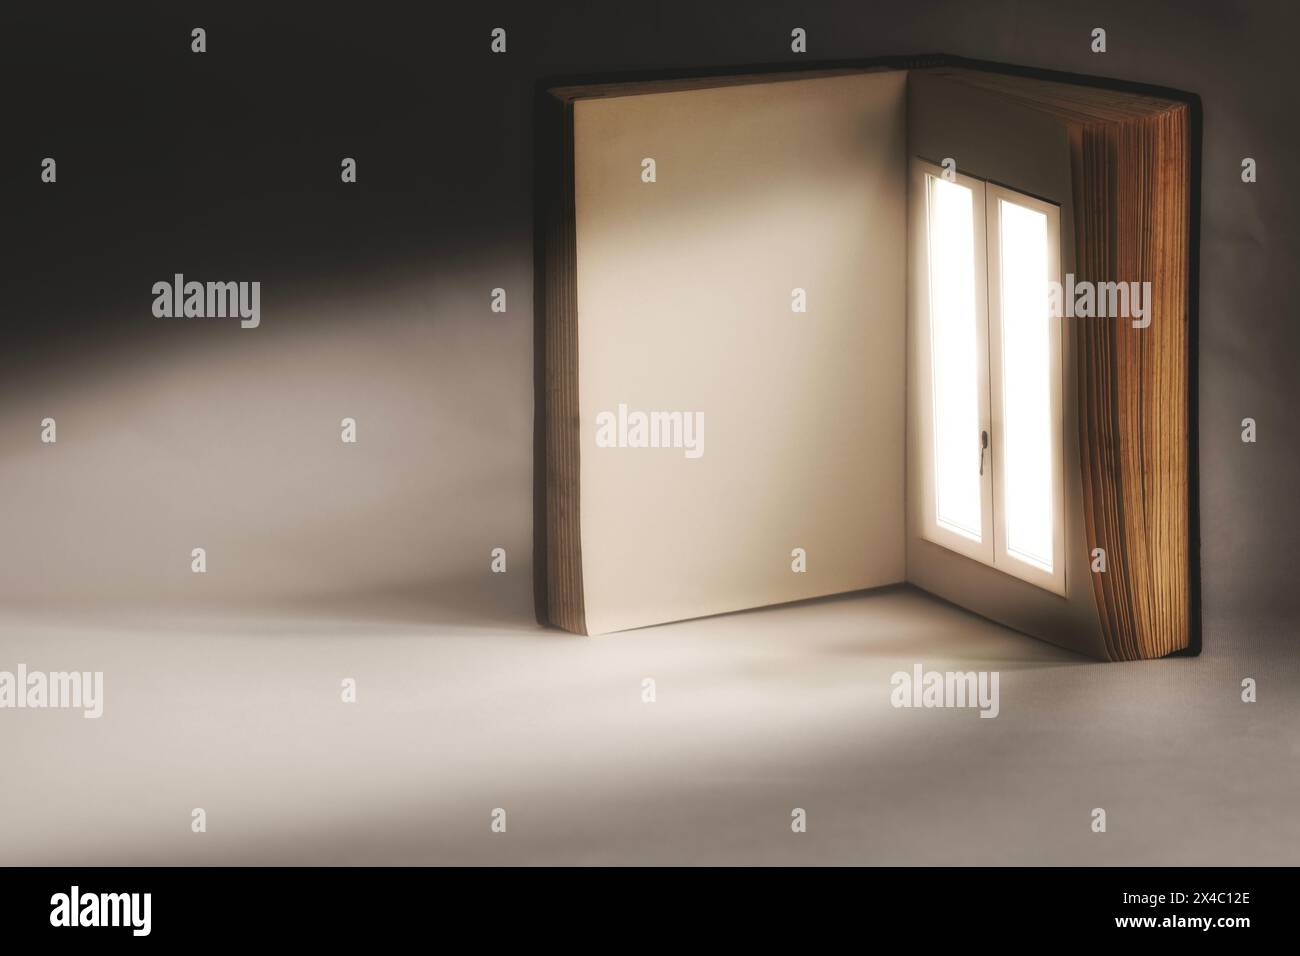 livre ouvert avec une fenêtre illuminée surréaliste sur une page, concept abstrait Banque D'Images